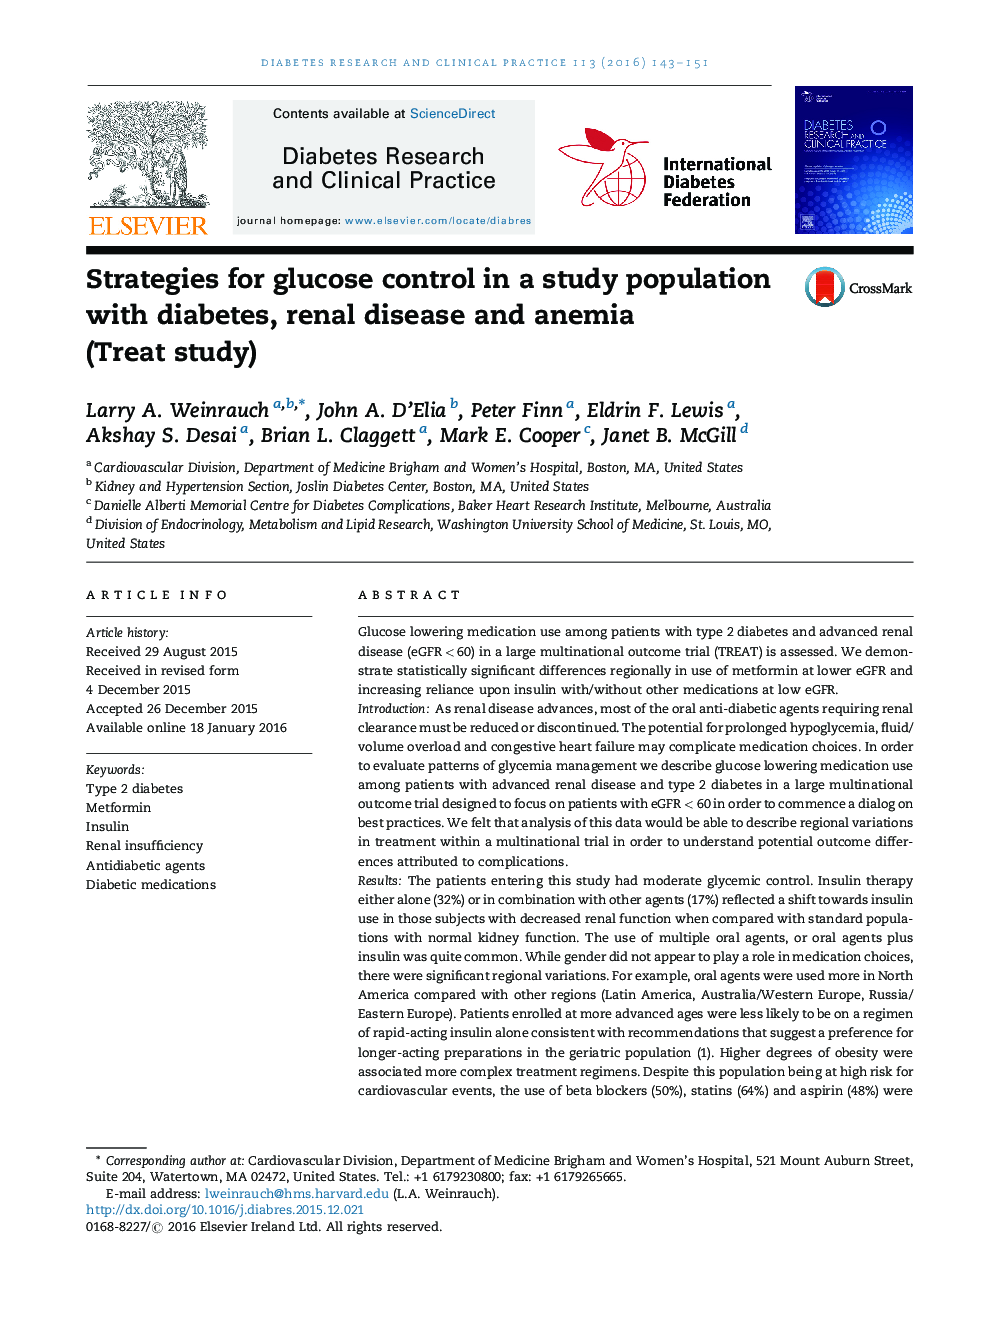 استراتژی های کنترل گلوکز در یک جمعیت مطالعه با دیابت، بیماری کلیوی و آنمی (مطالعه درمان) 